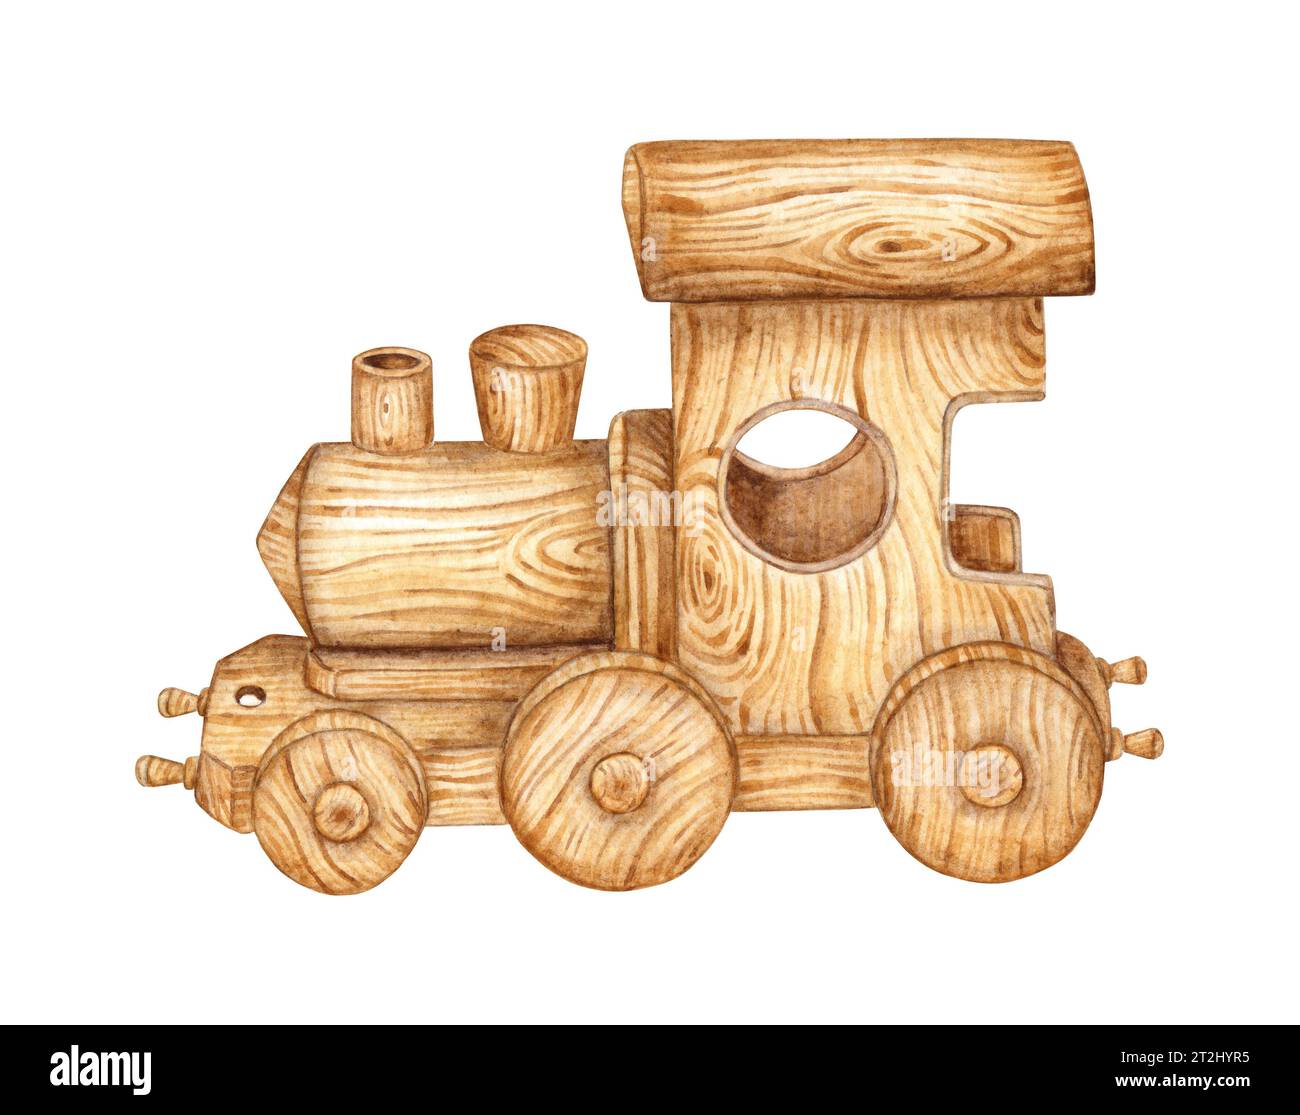 Kinderspielzeug, Holzzug. Aquarellabbildung von Kleinkindtransporten auf isoliertem Hintergrund. Zeichnung einer Spielzeuglokomotive für Kinder Stockfoto